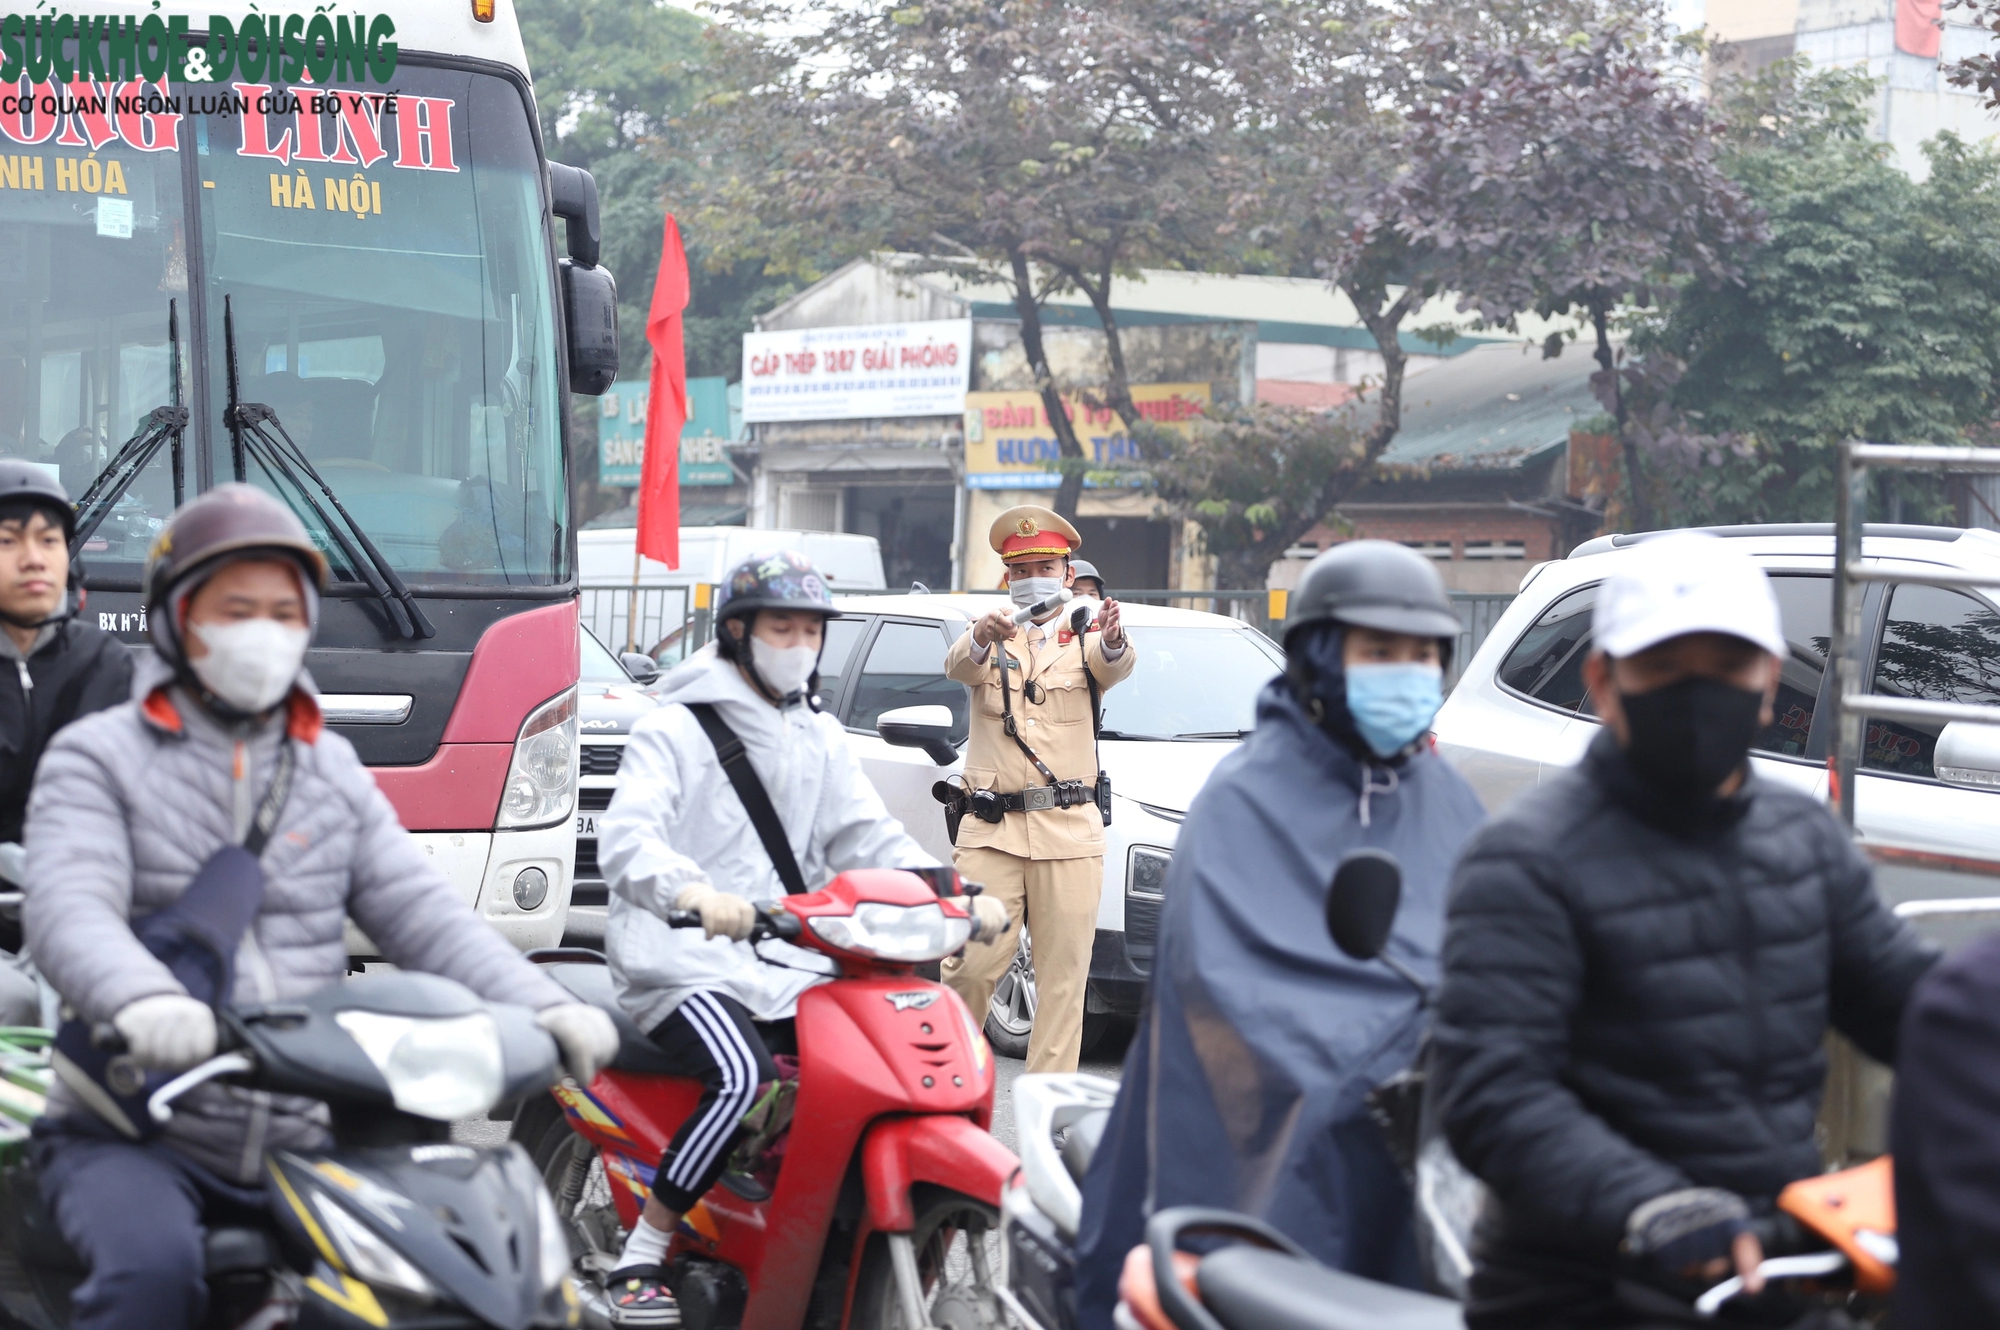 'Khám' xe khách dịp cận Tết, phát hiện tài xế chở cả xe máy trong khoang chở người- Ảnh 2.